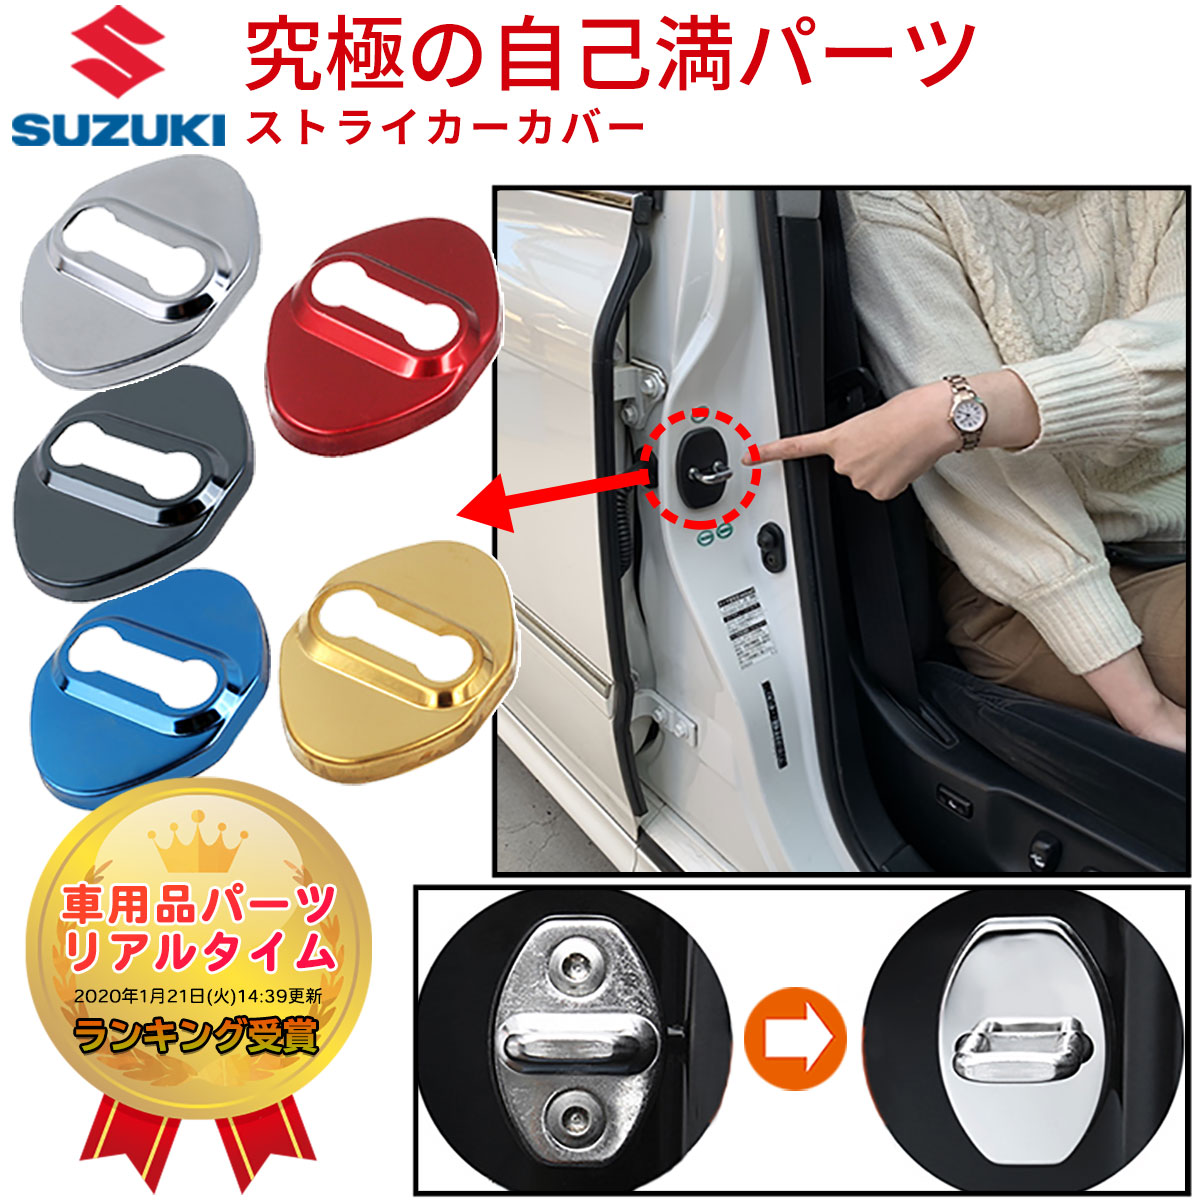 楽天ネグエススズキ SUZUKI ロゴなし ドア ストライカー カバー ステンレス鋼製 Type:A Negesu（ネグエス） 【ランキング受賞】【送料無料】